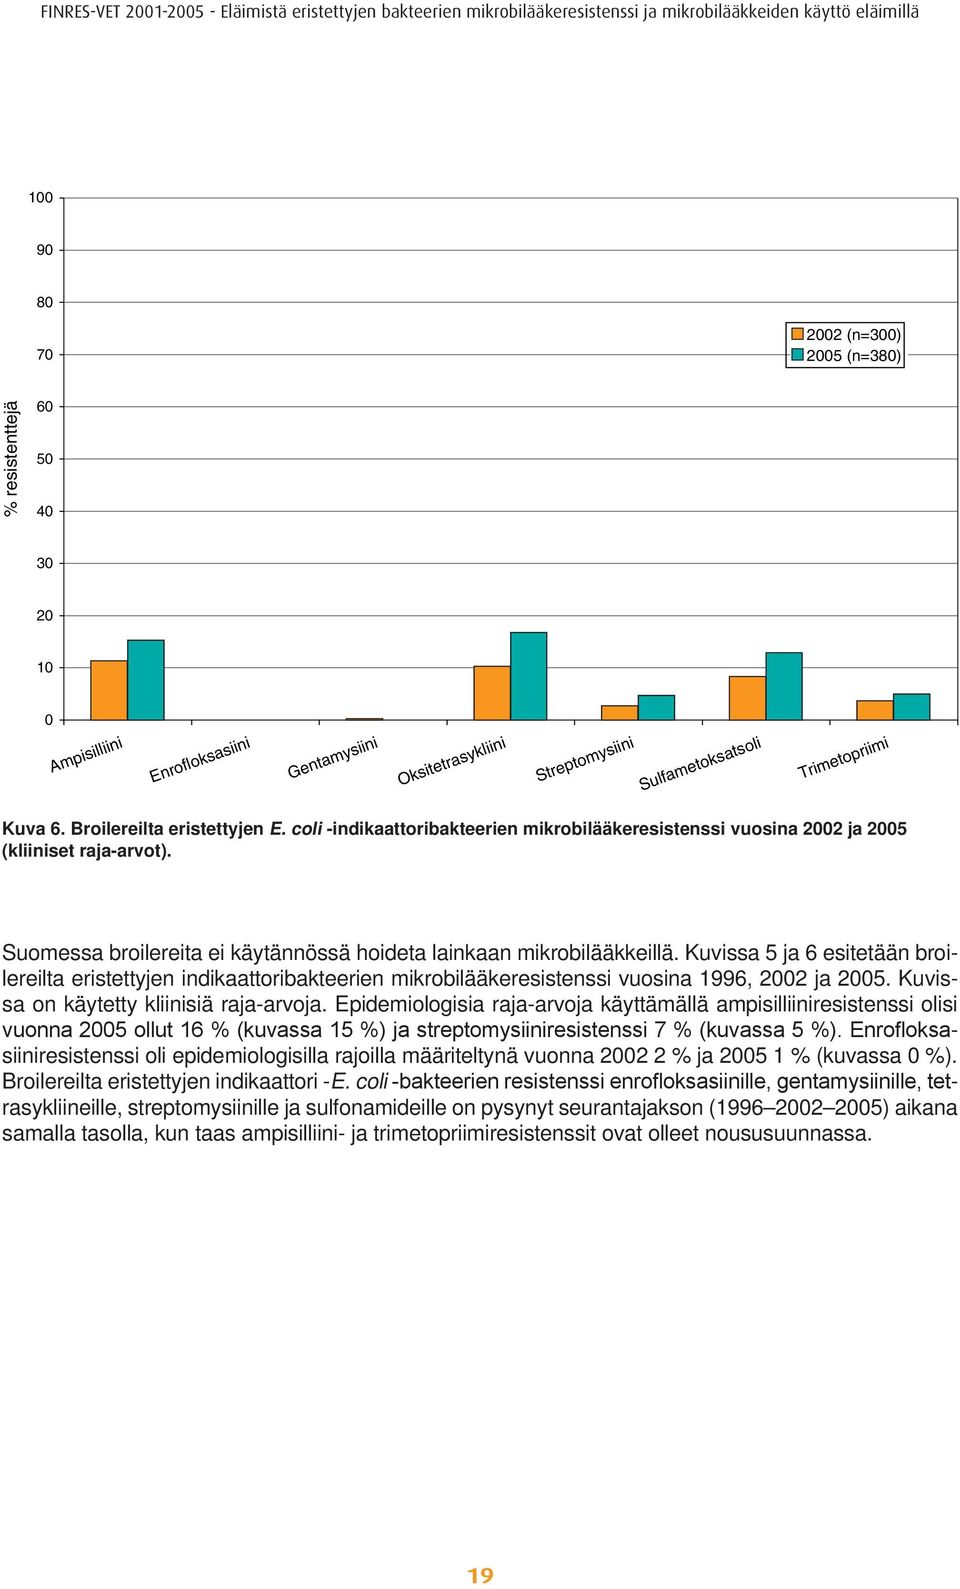 Kuvissa on käytetty kliinisiä raja-arvoja. Epidemiologisia raja-arvoja käyttämällä ampisilliiniresistenssi olisi vuonna 2005 ollut 16 % (kuvassa 15 %) ja streptomysiiniresistenssi 7 % (kuvassa 5 %).